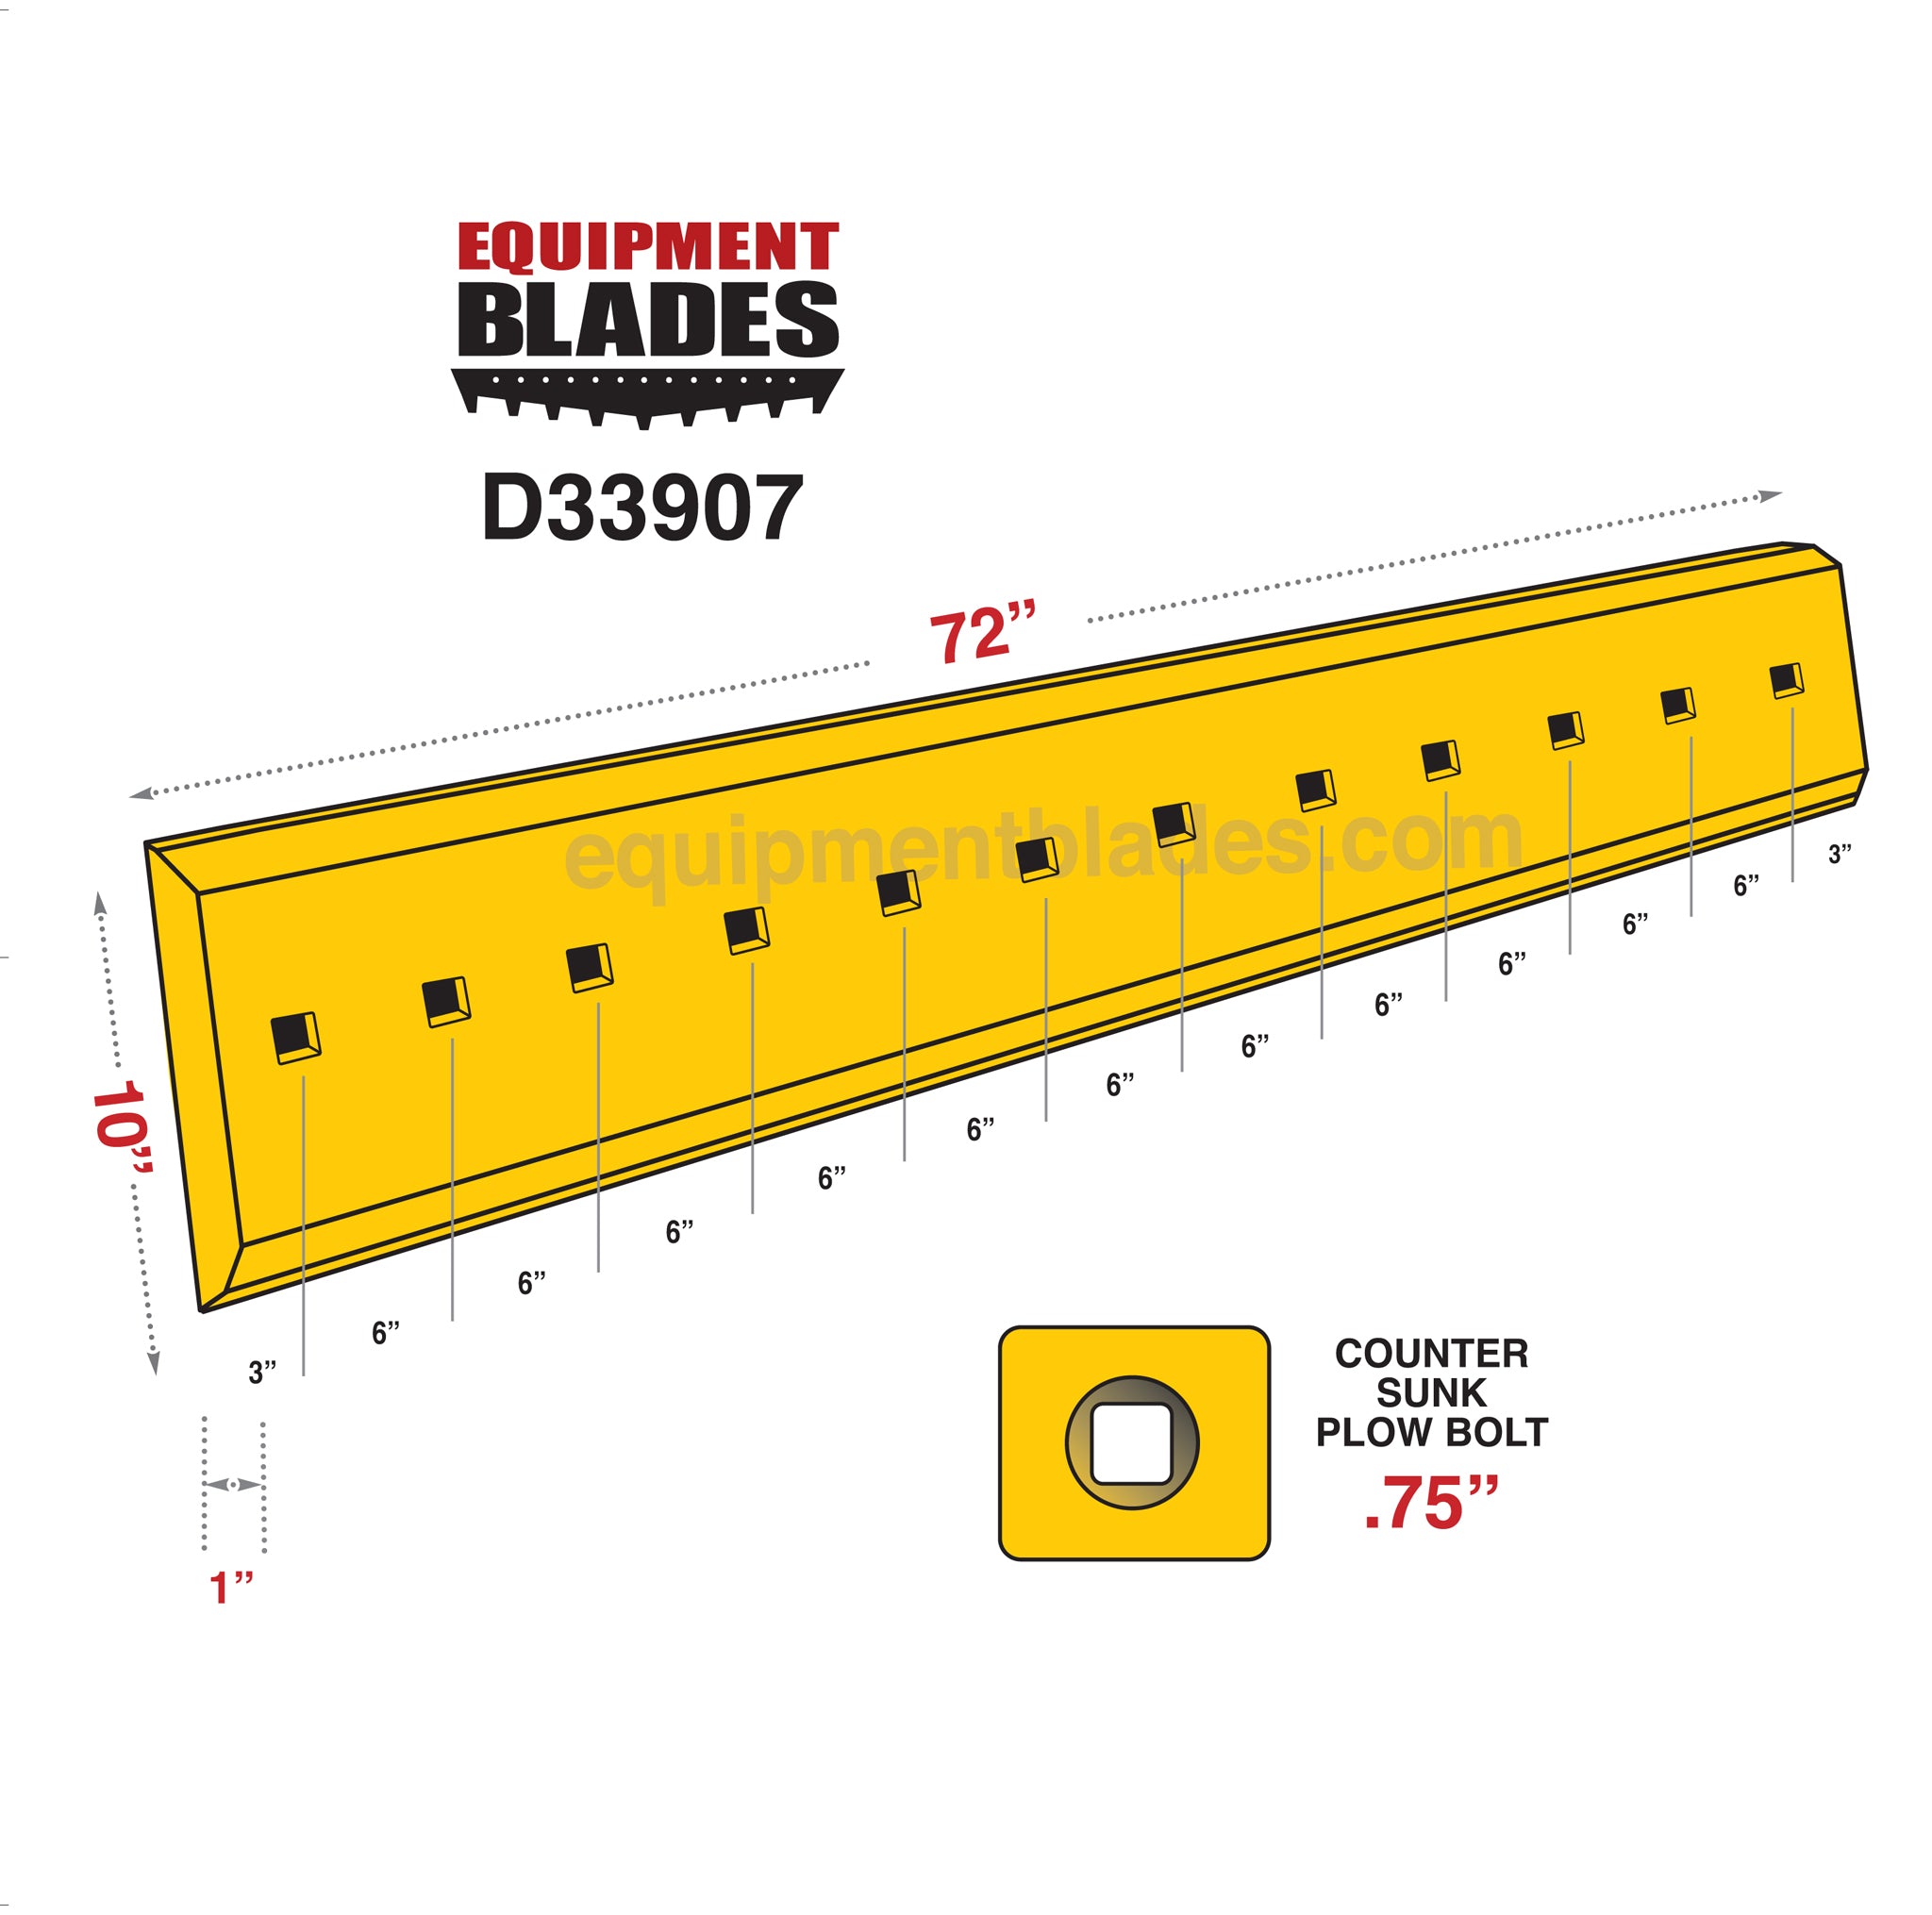 D33907-Equipment Blades Inc-Equipment Blades Inc